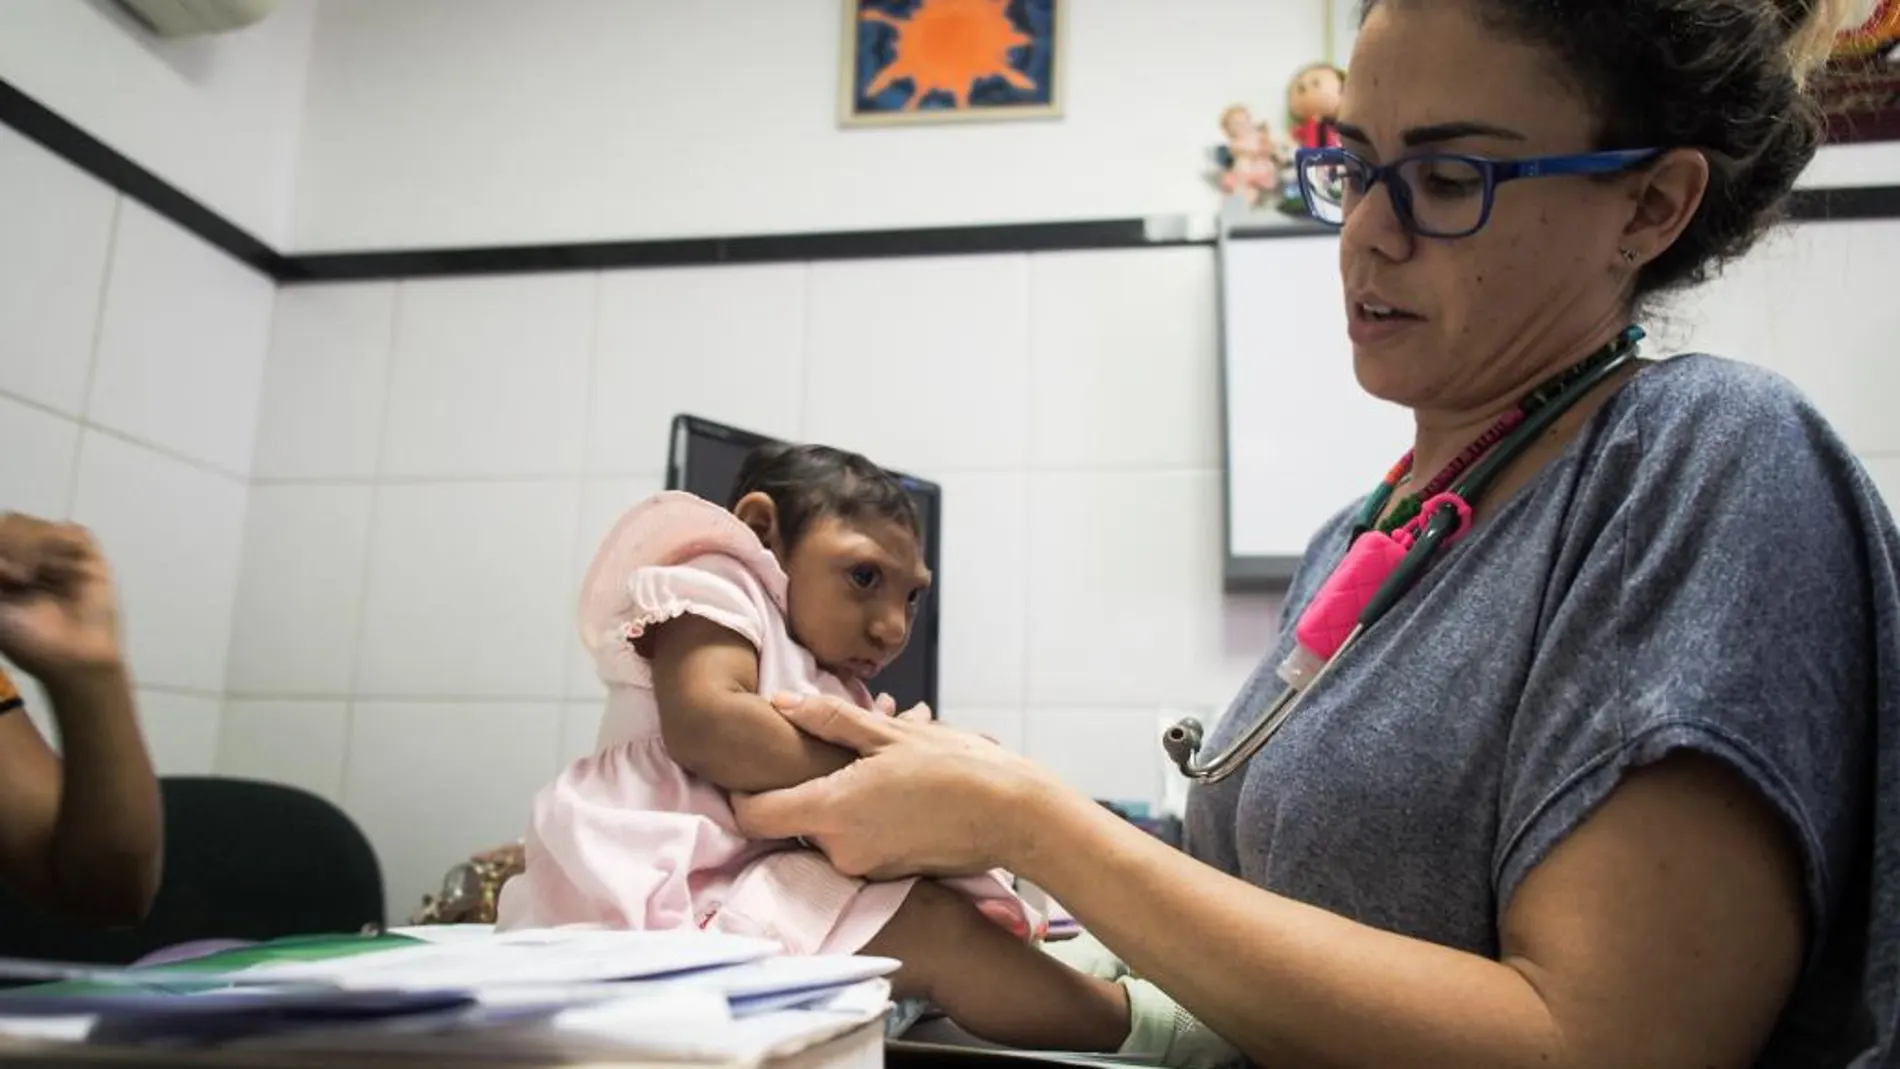 La doctora Danielle Cavalcanti trabaja en dos maternidades de Recife , donde atiende a bebés con microcefalia como el de la fotografía